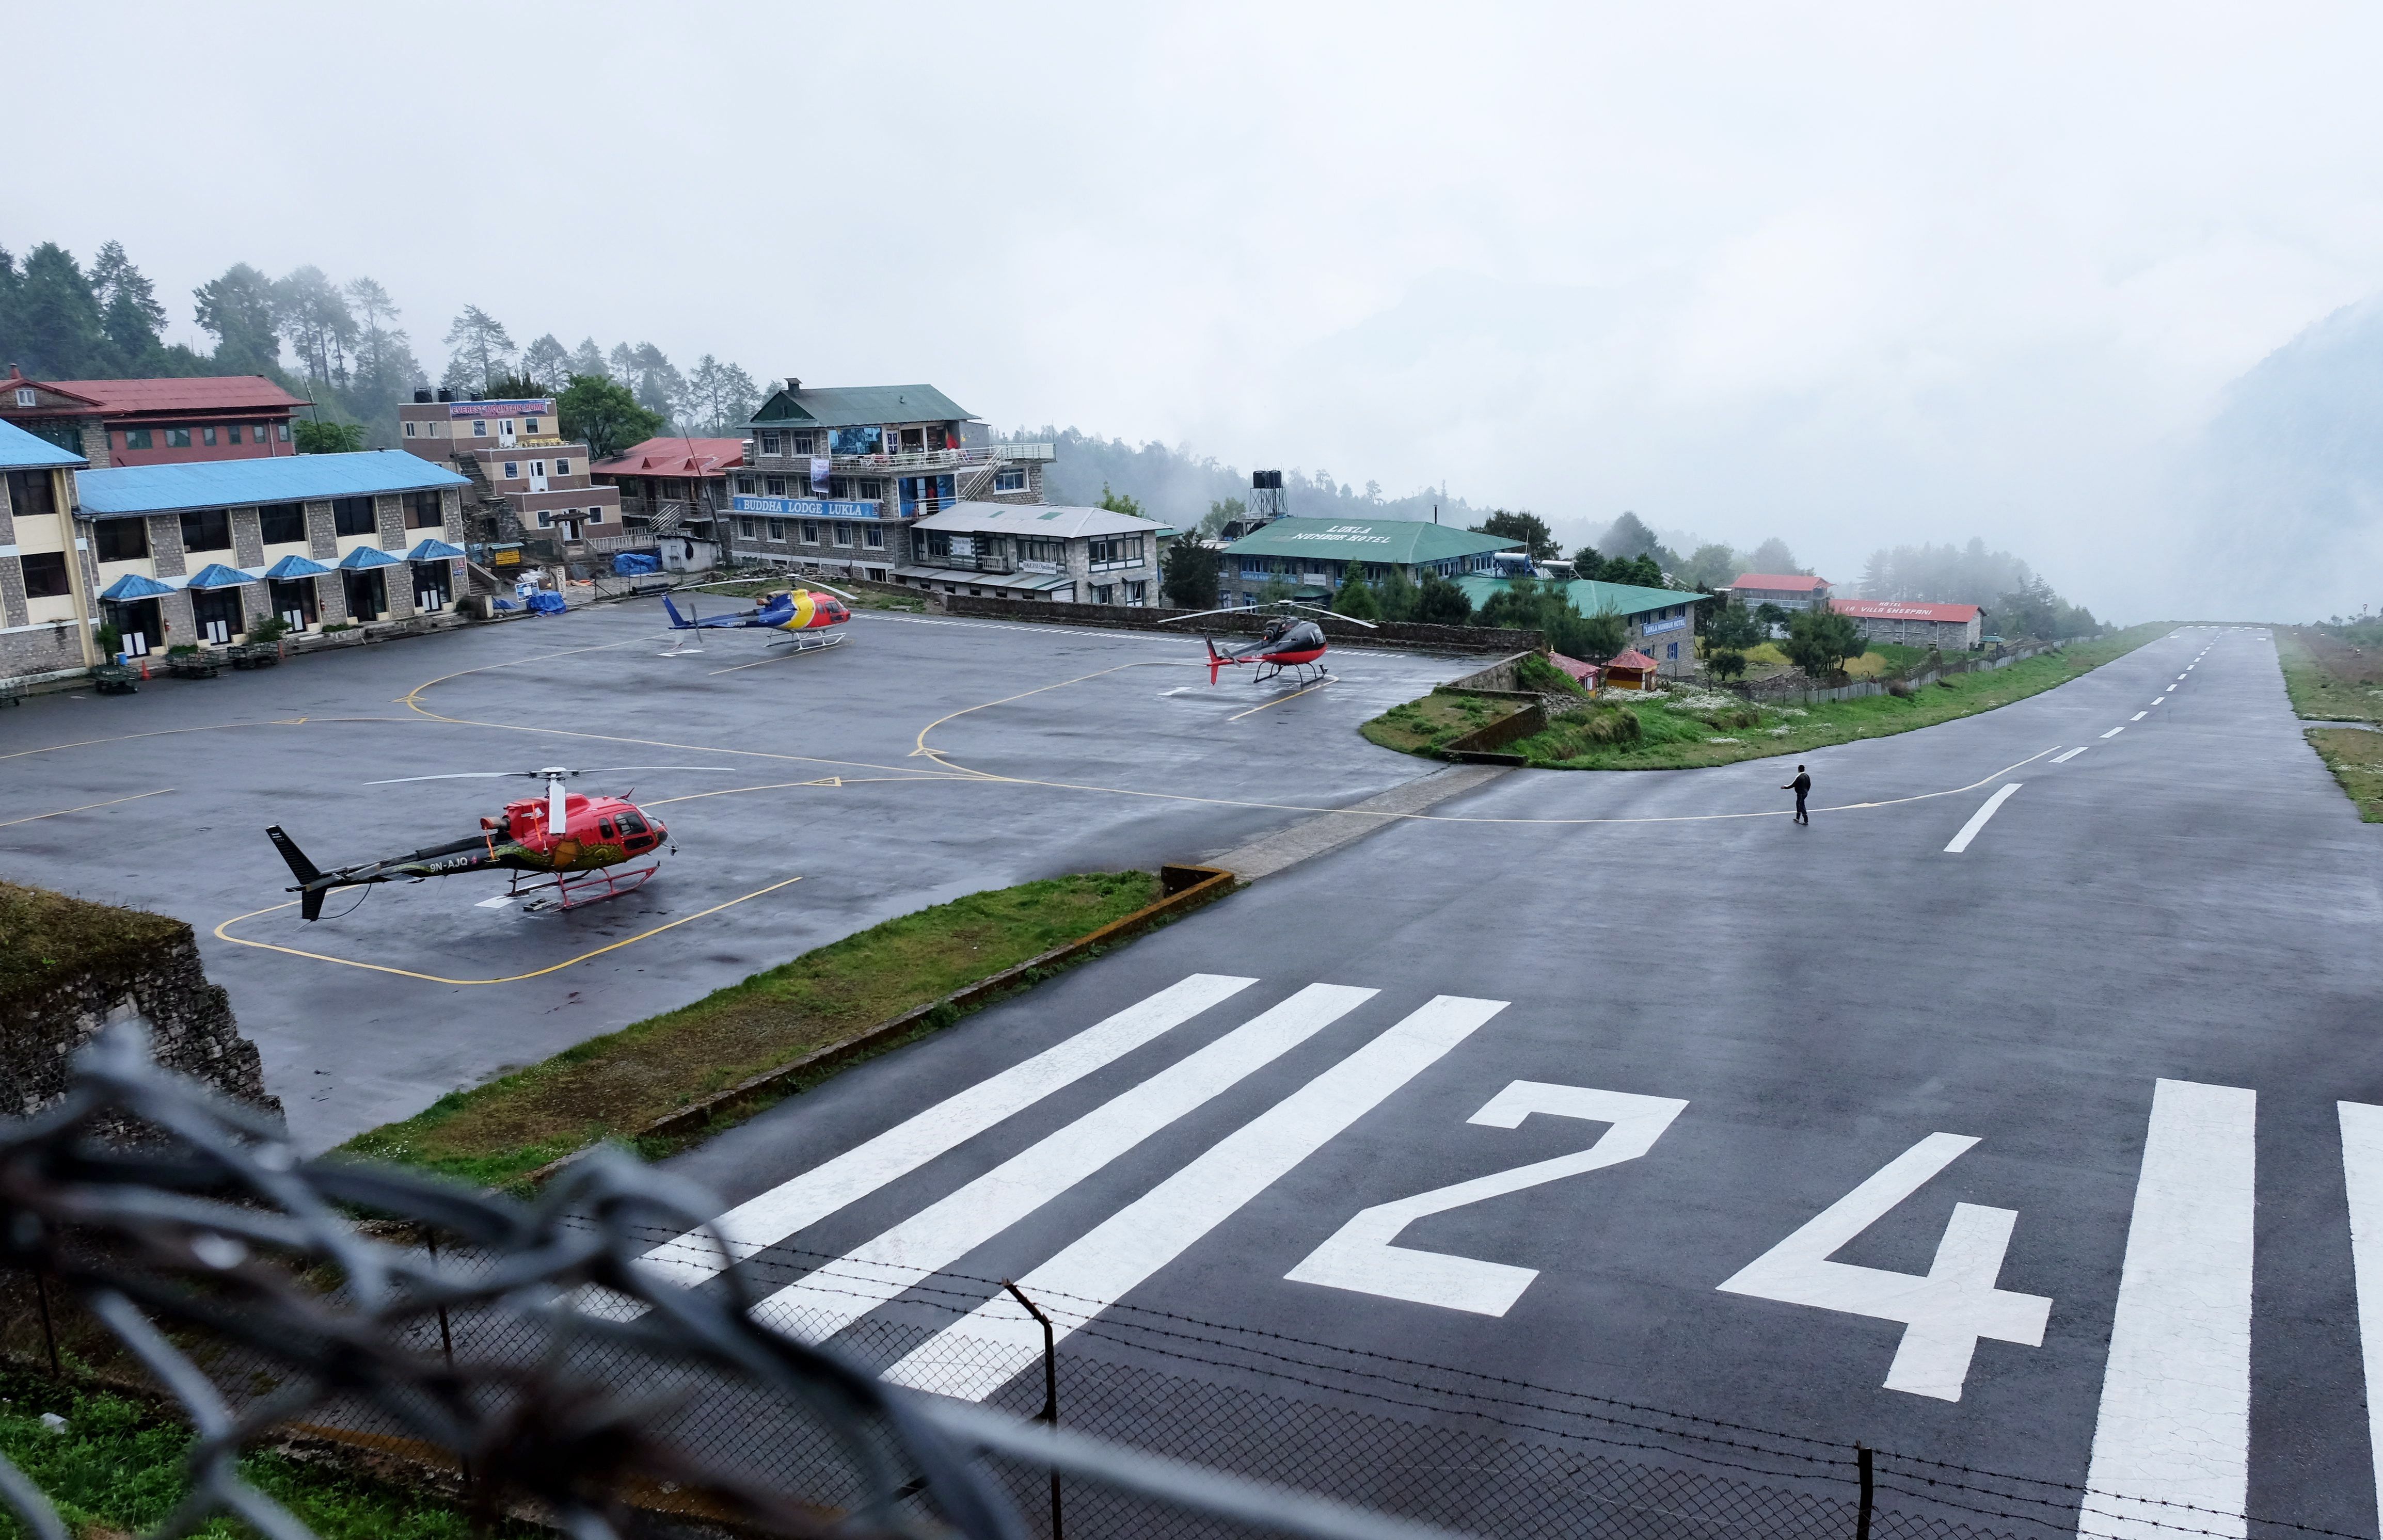 Lukla Airport Nepal Runway In Fog